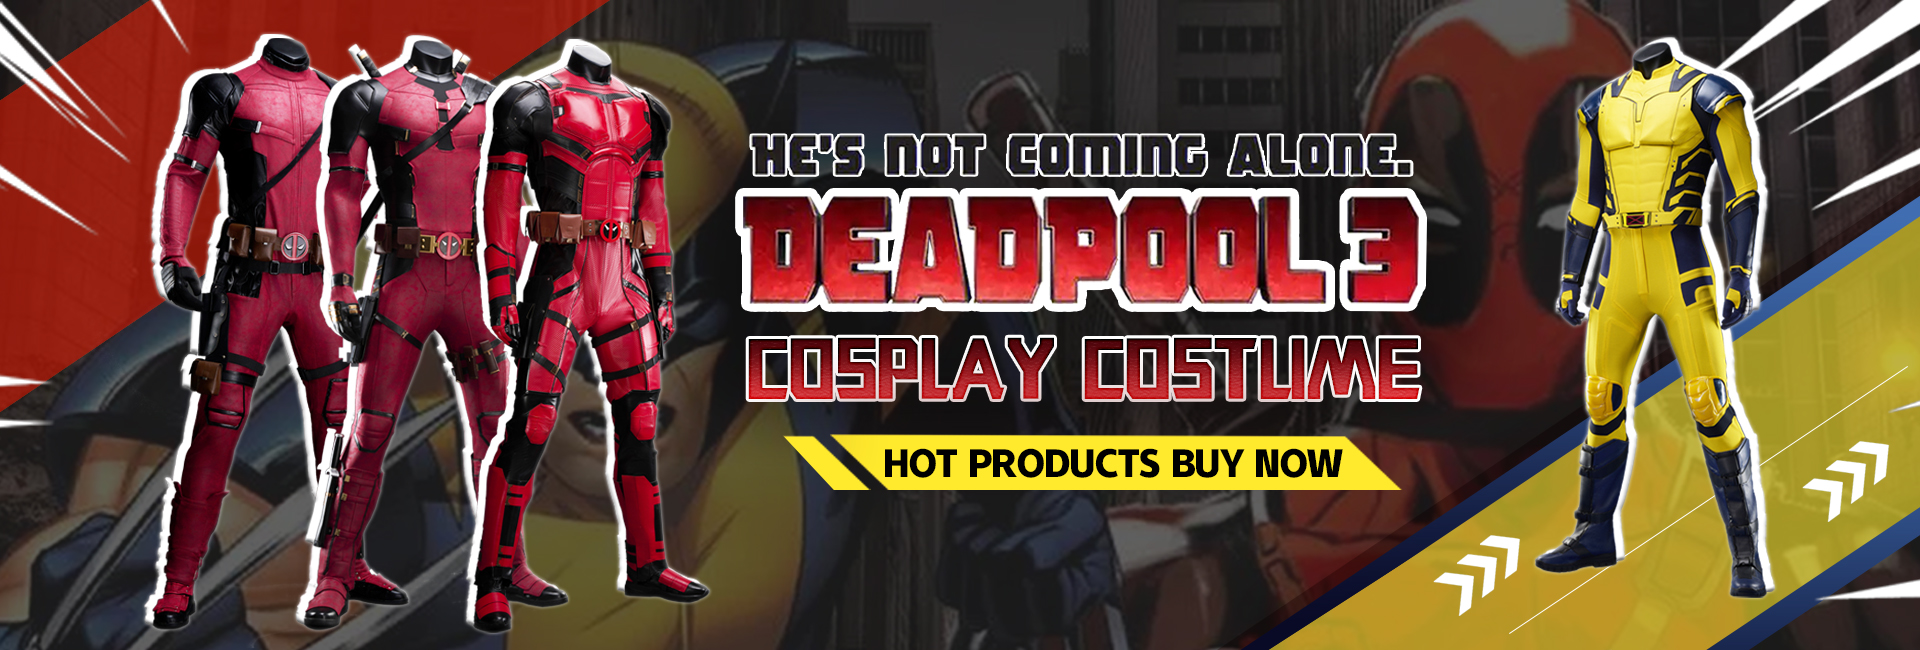 deadpool,wolverine,costume,cosplay,deadpool 3,deadpool 2